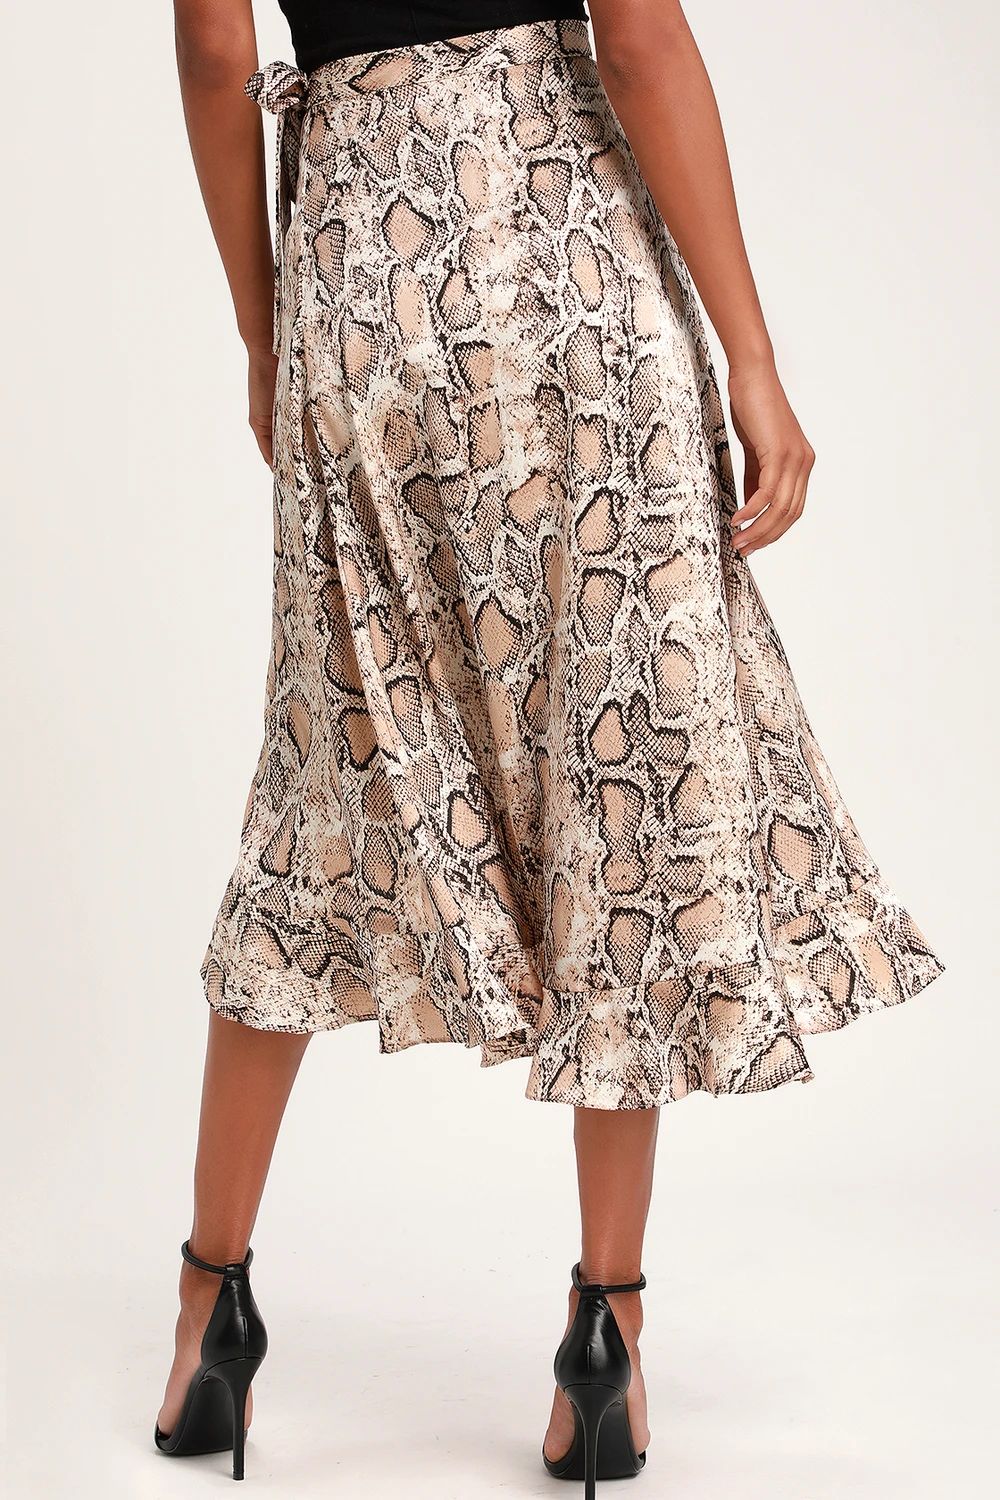 She's Wild Beige Snake Print Wrap Midi Skirt | Lulus (US)